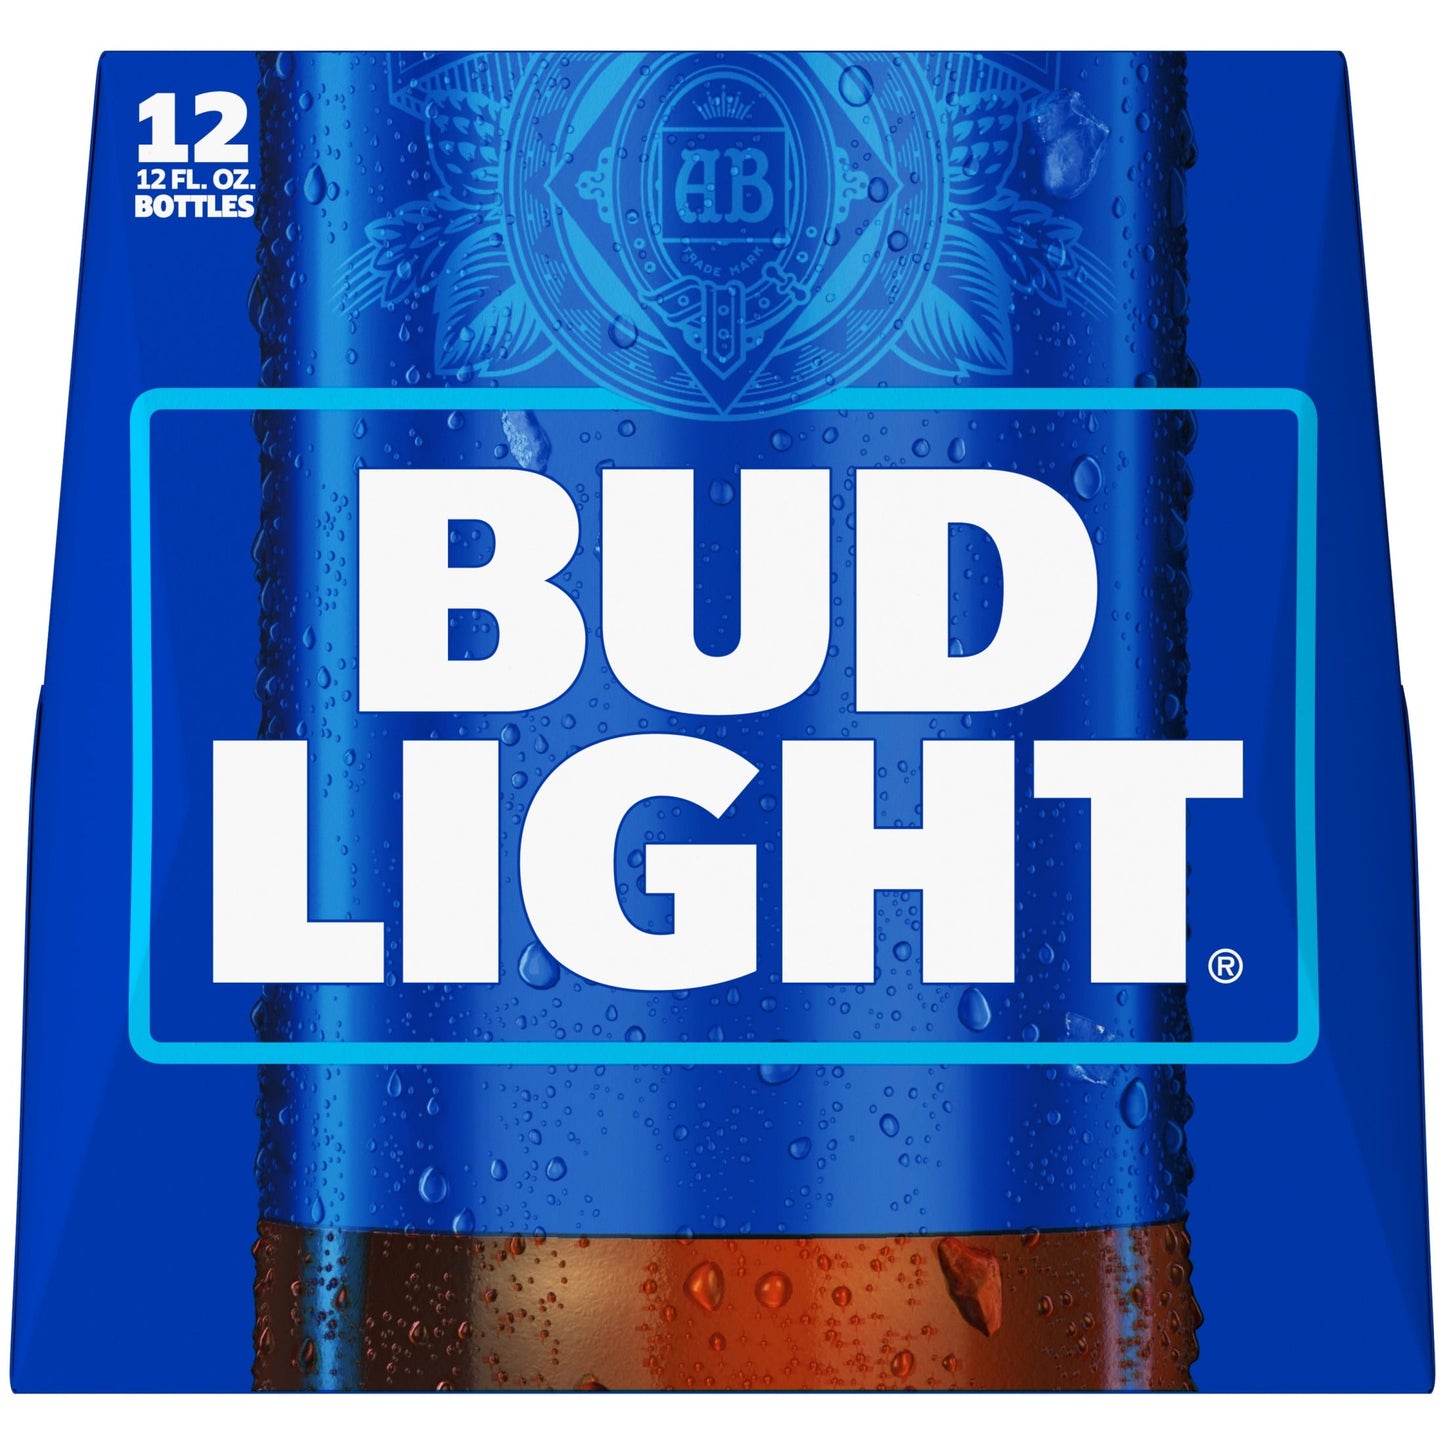 Bud Light Beer, 12 Pack Lager Beer, 12 fl oz Glass Bottles, 4.2% ABV, Domestic Beer